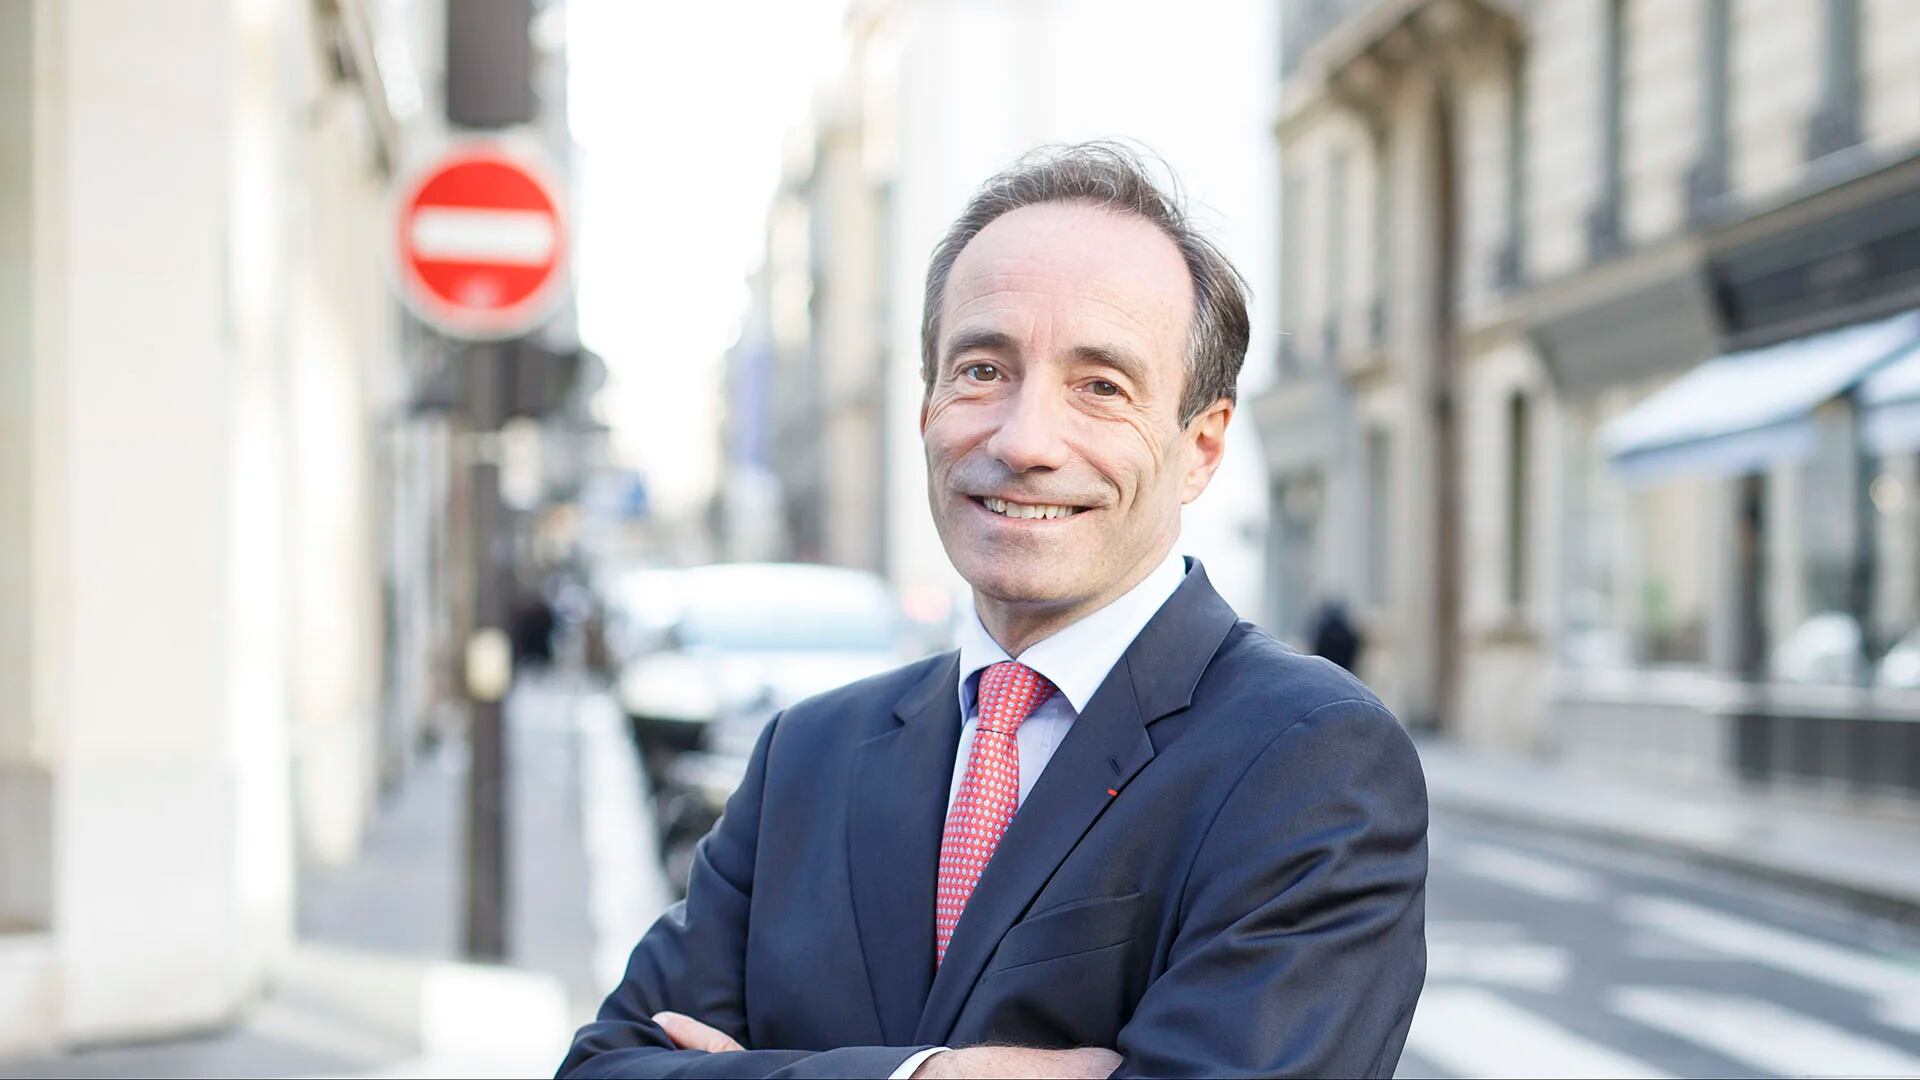 Bernard Tabary, CEO Internacional de Keolis, confía en la solidez de la propuesta integral para operar la red de subterráneos de Buenos Aires